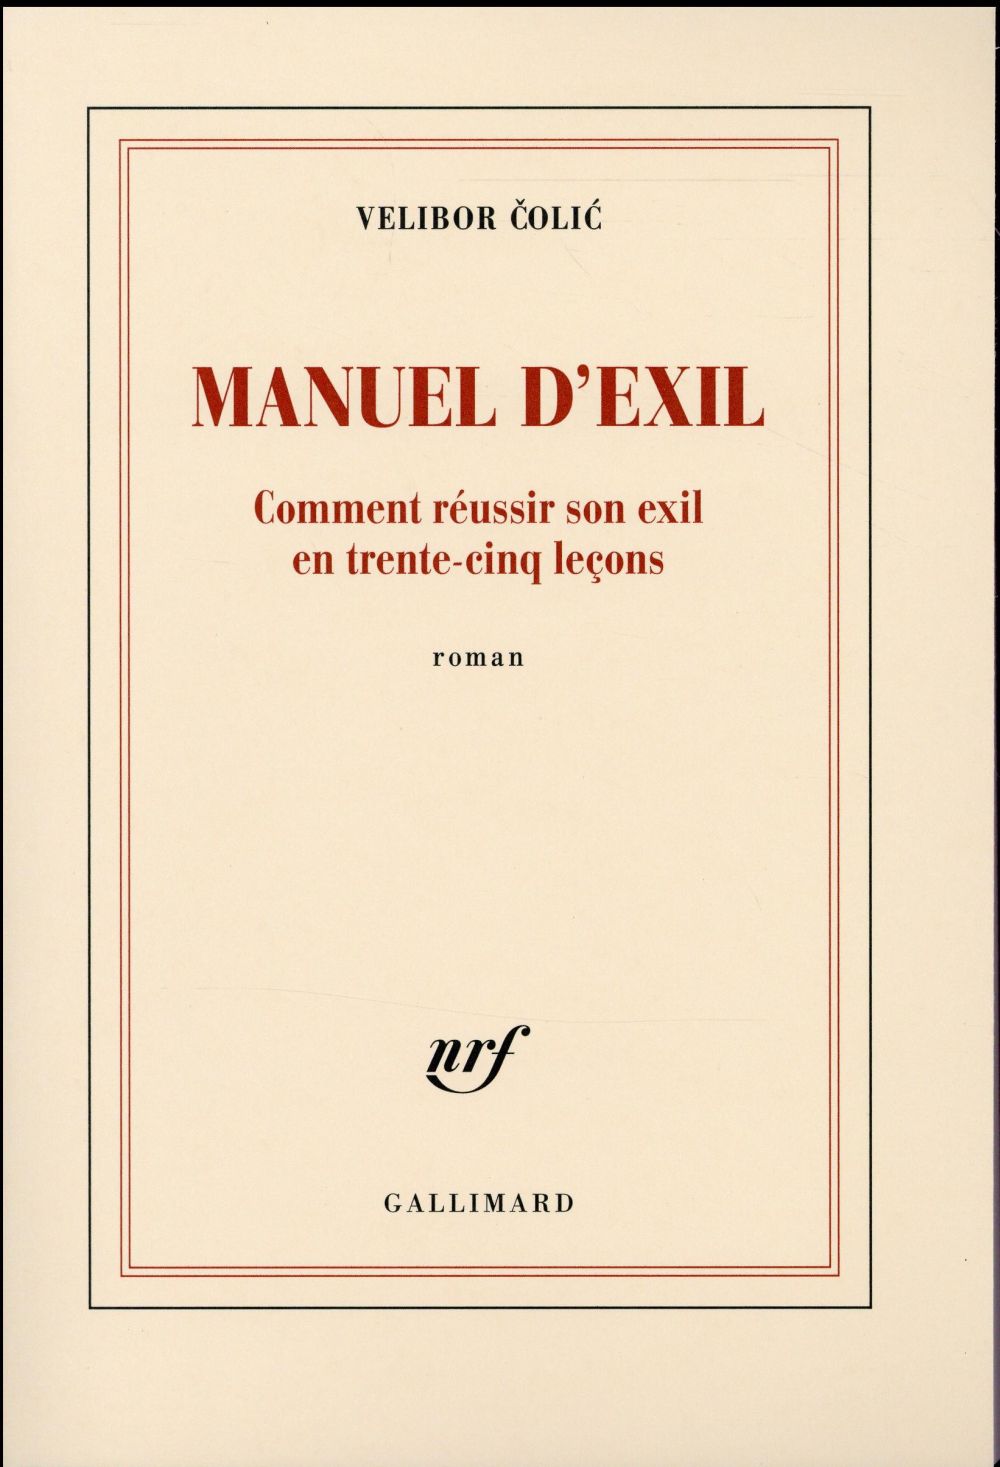 MANUEL D'EXIL - COMMENT REUSSIR SON EXIL EN TRENTE-CINQ LECONS